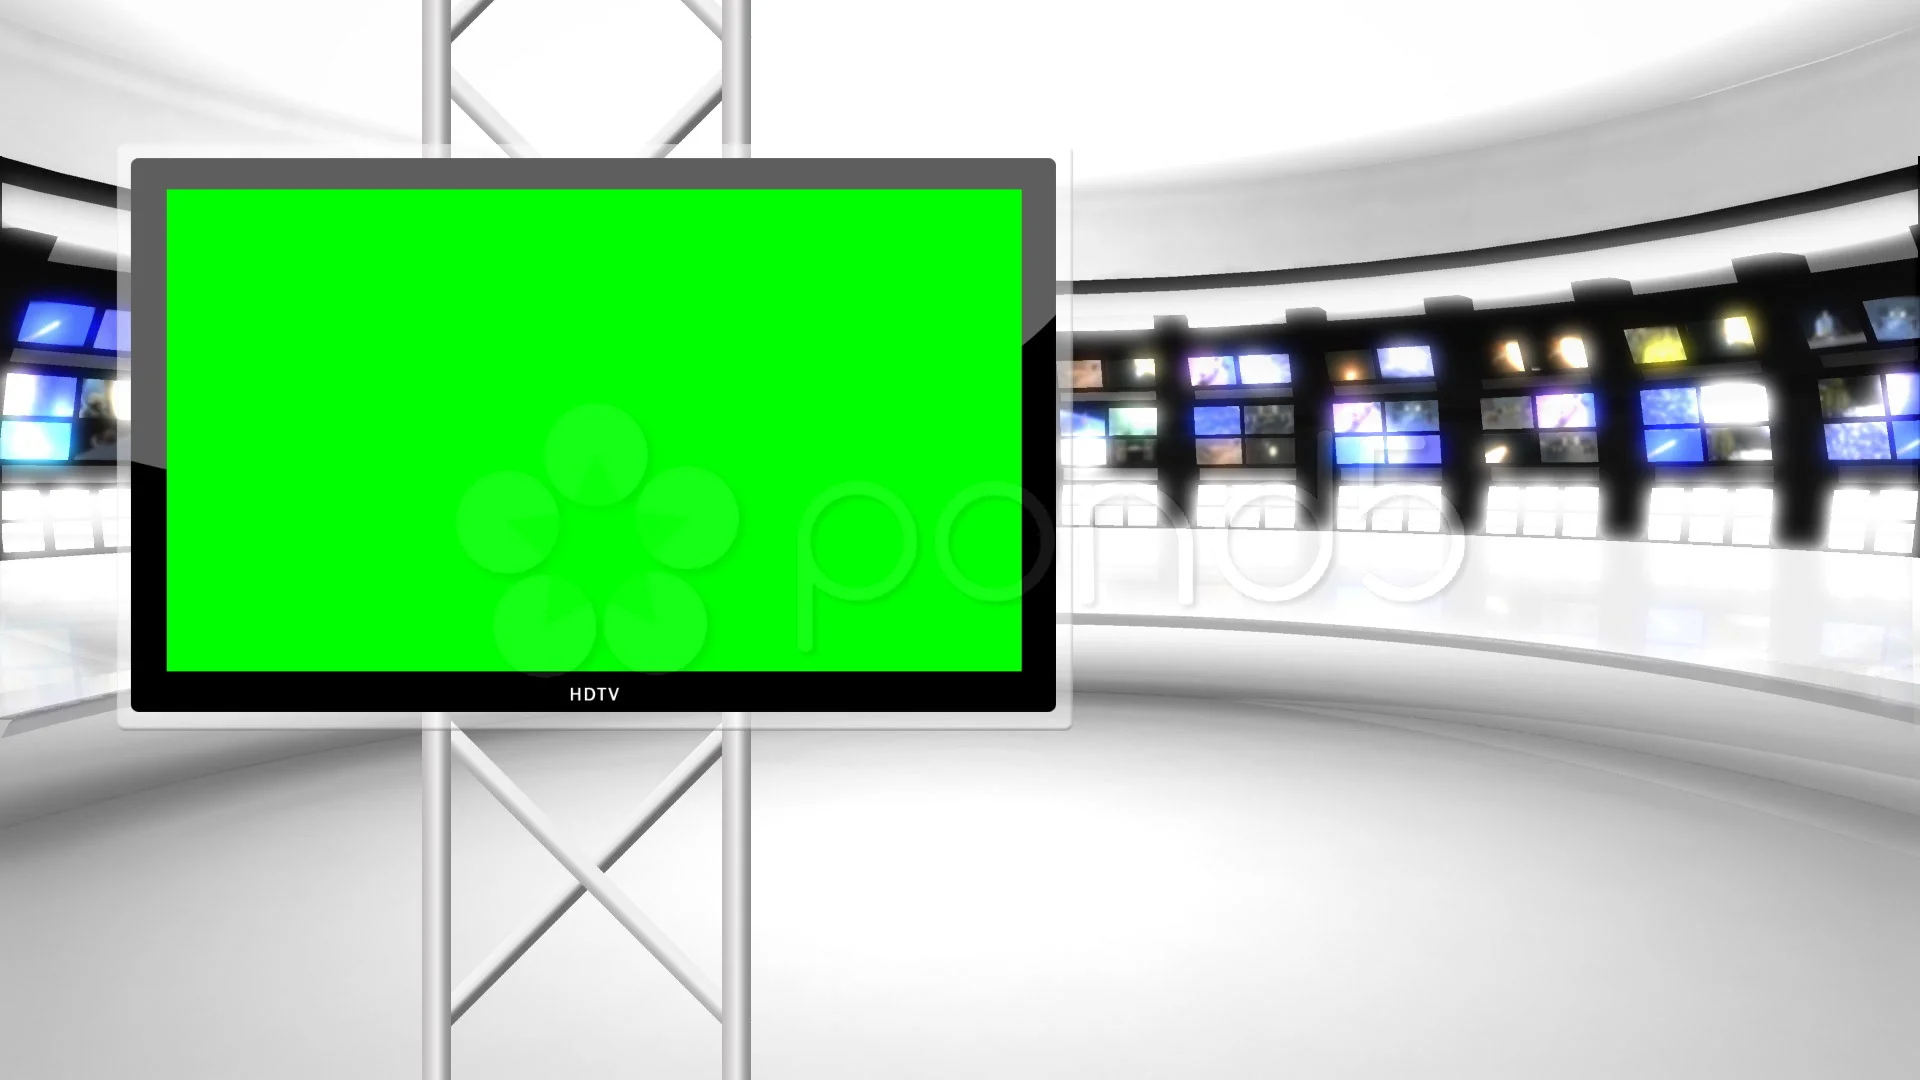 Điều quan trọng của một studio tin tức là màn hình xanh ảo để tạo ra bối cảnh phù hợp. Với News Studio Virtual Green Screen, bạn sẽ được sử dụng những bức ảnh trong suốt để tạo ra phong cách chuyên nghiệp cho cuộc trò chuyện trực tuyến của bạn. Những ảnh nền của bạn sẽ được hiển thị một cách rõ ràng và nổi bật.